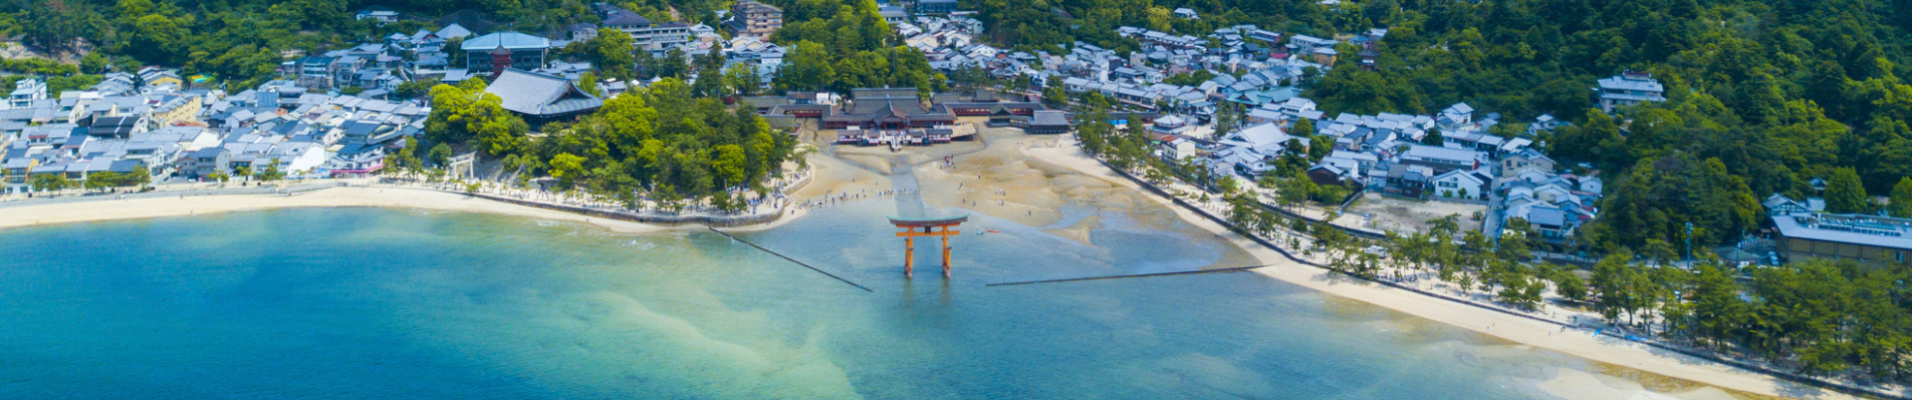 Itsukushima, mer de Seto